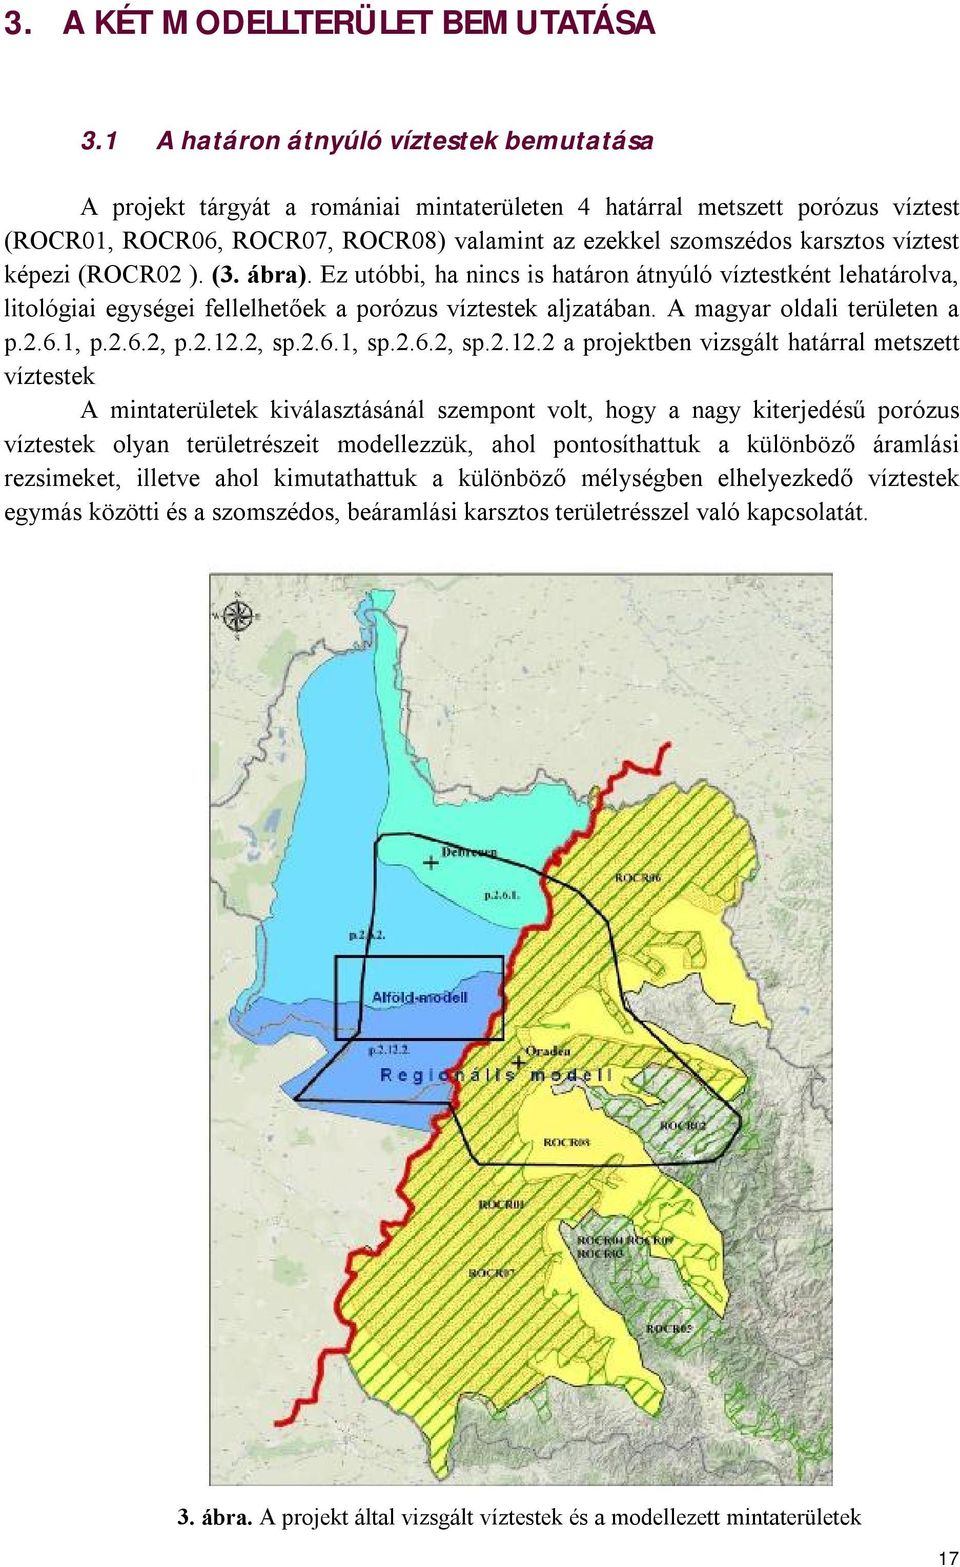 víztest képezi (ROCR02 ). (3. ábra). Ez utóbbi, ha nincs is határon átnyúló víztestként lehatárolva, litológiai egységei fellelhetőek a porózus víztestek aljzatában. A magyar oldali területen a p.2.6.